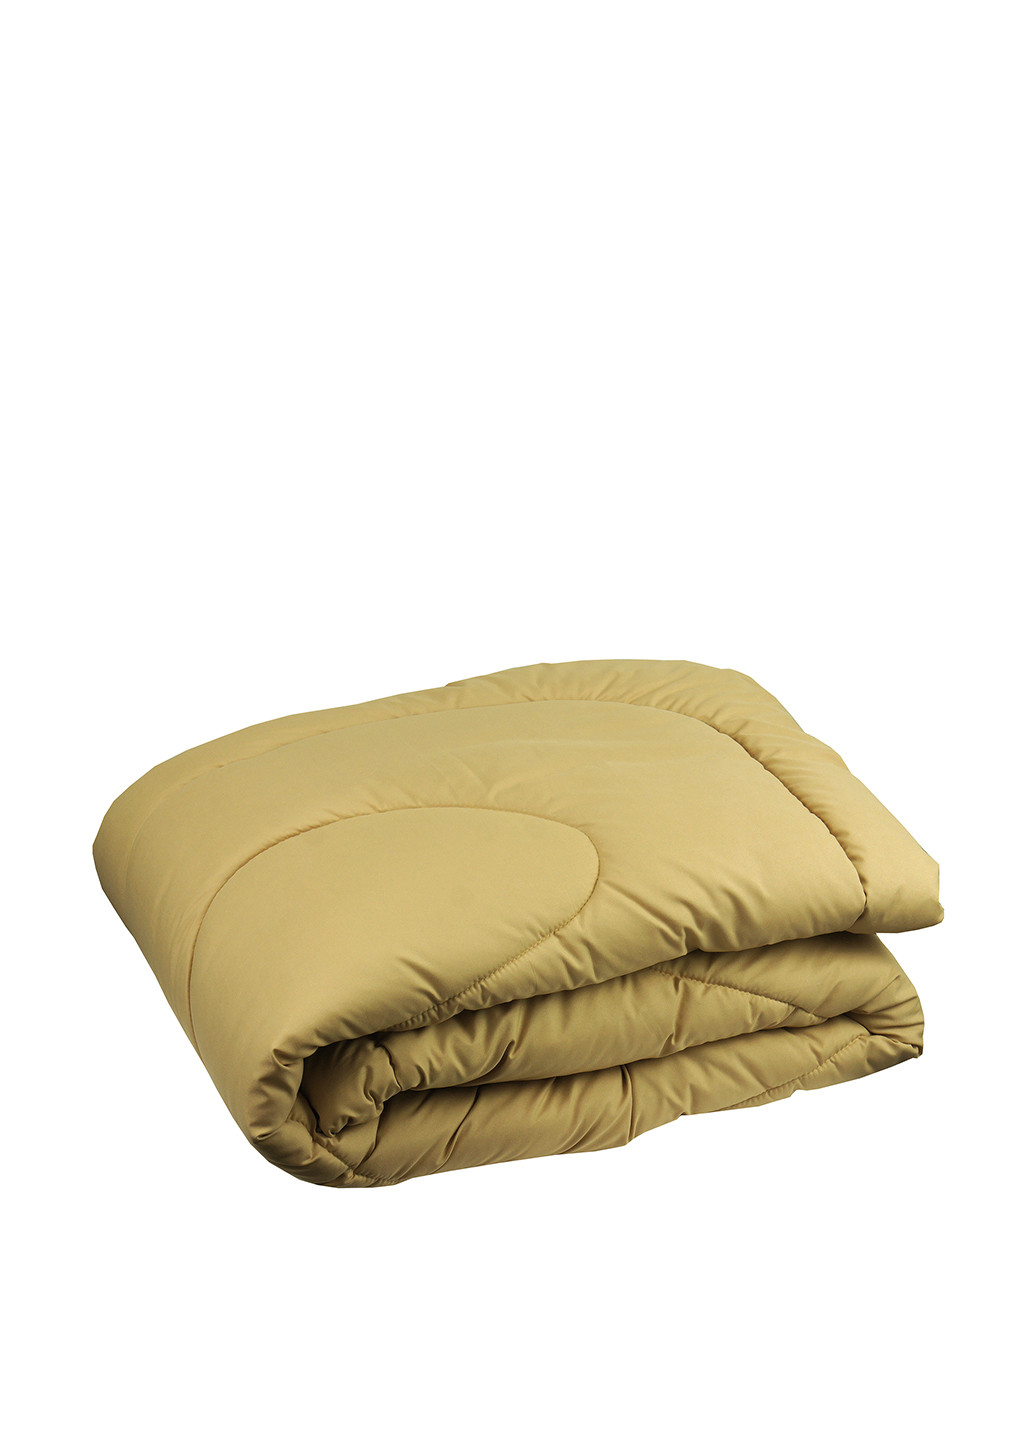 Одеяло силиконовое, 140х205 см Руно однотонное пшеничное